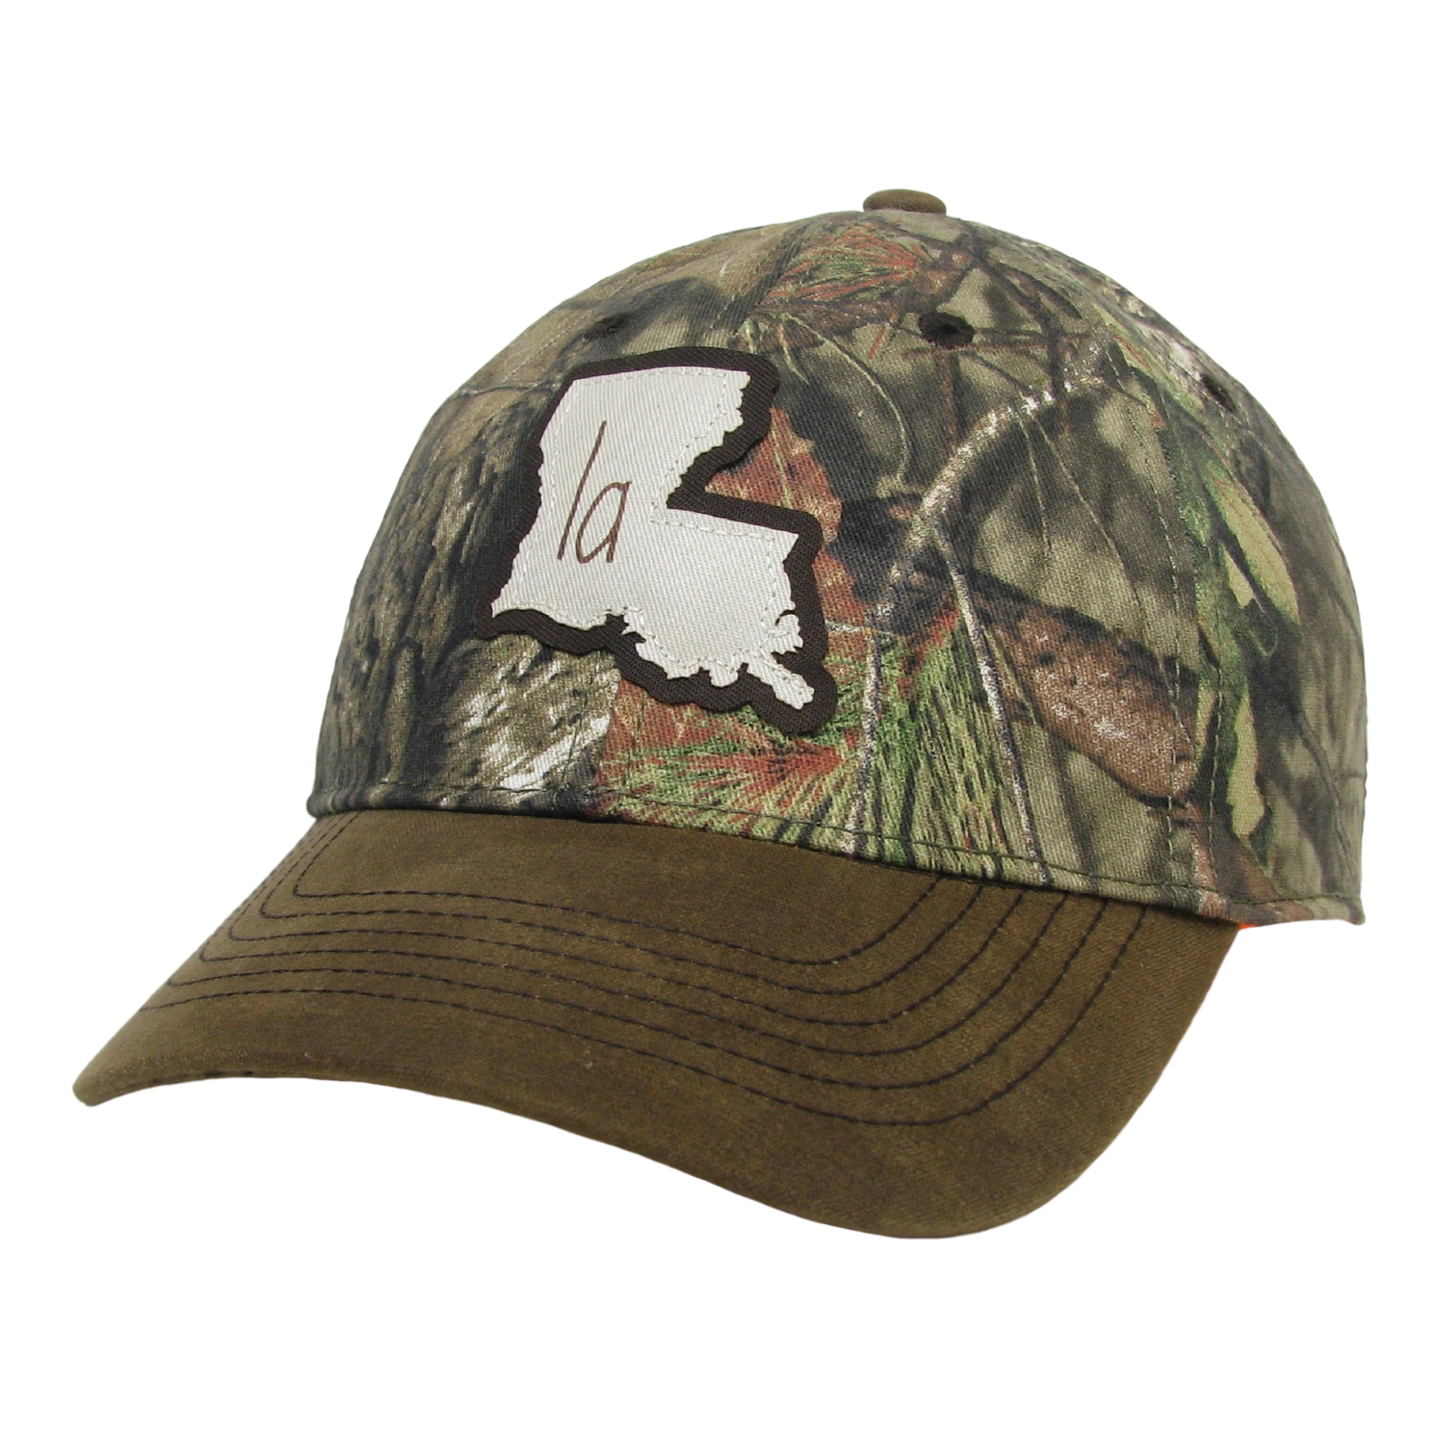 Louisiana ATV All Terrain Hat in Mossy Oak Breakup/Brown